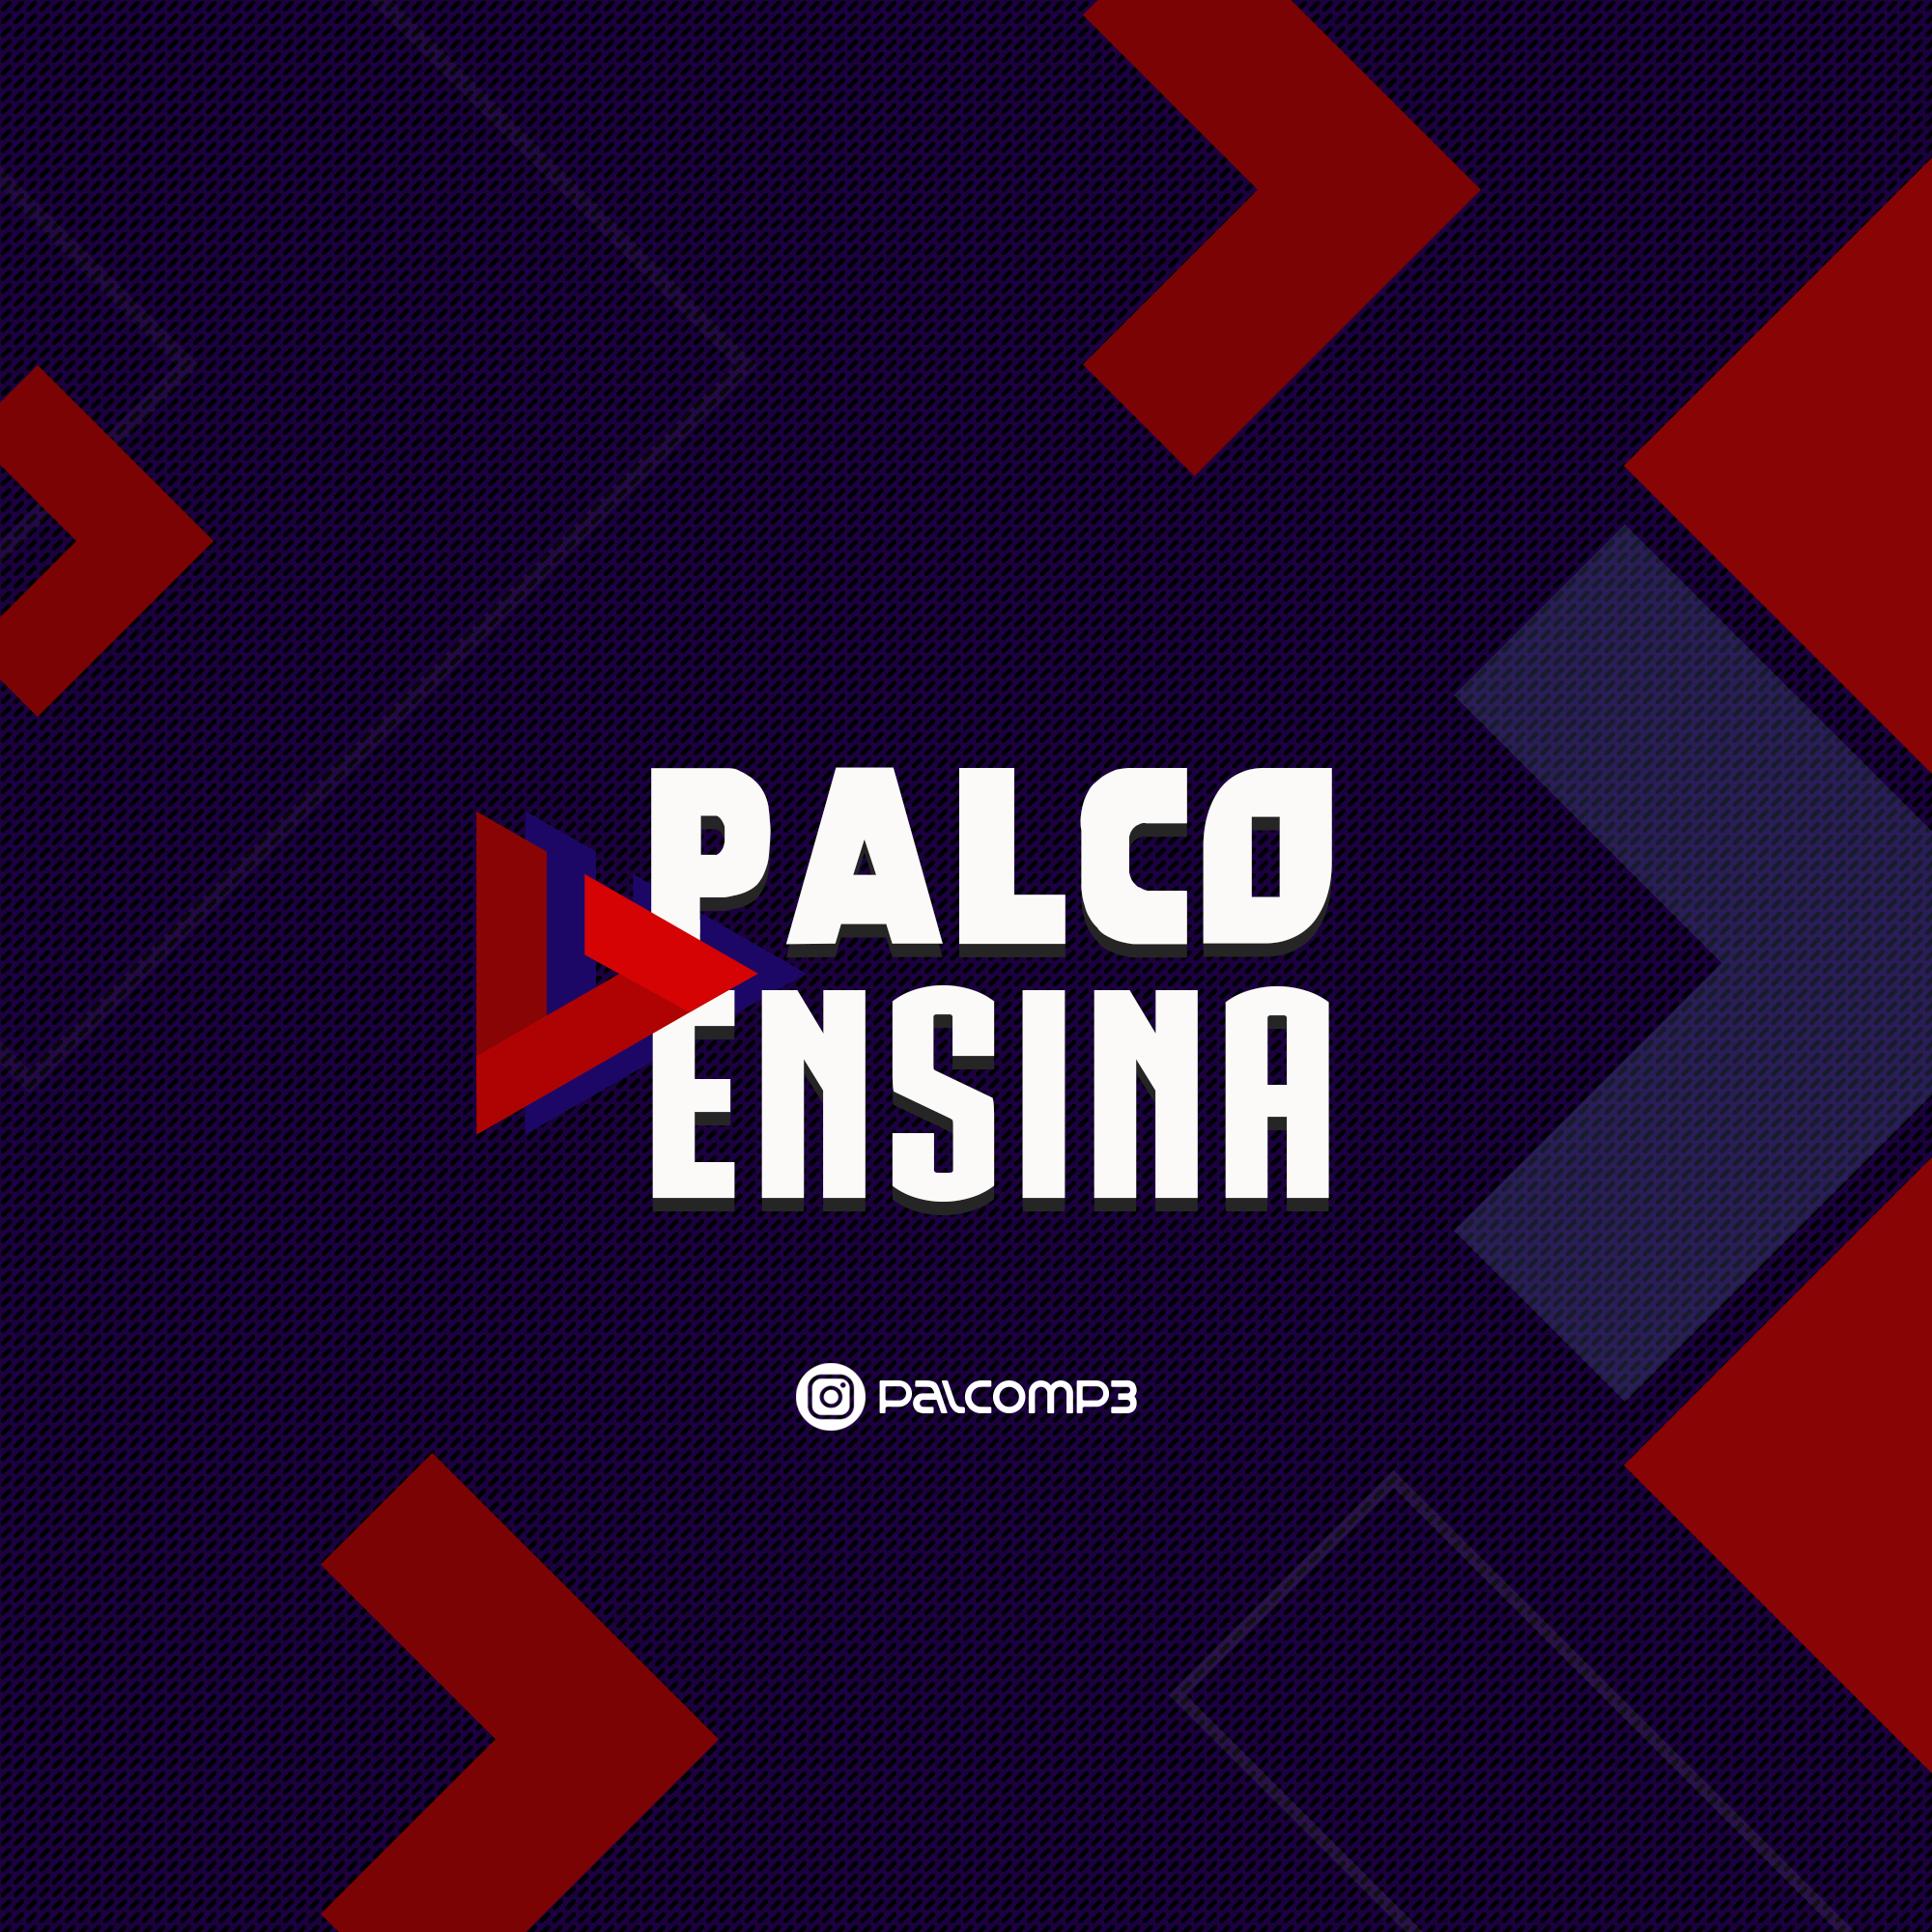 Palco Ensina logo e Instagram @palcomp3